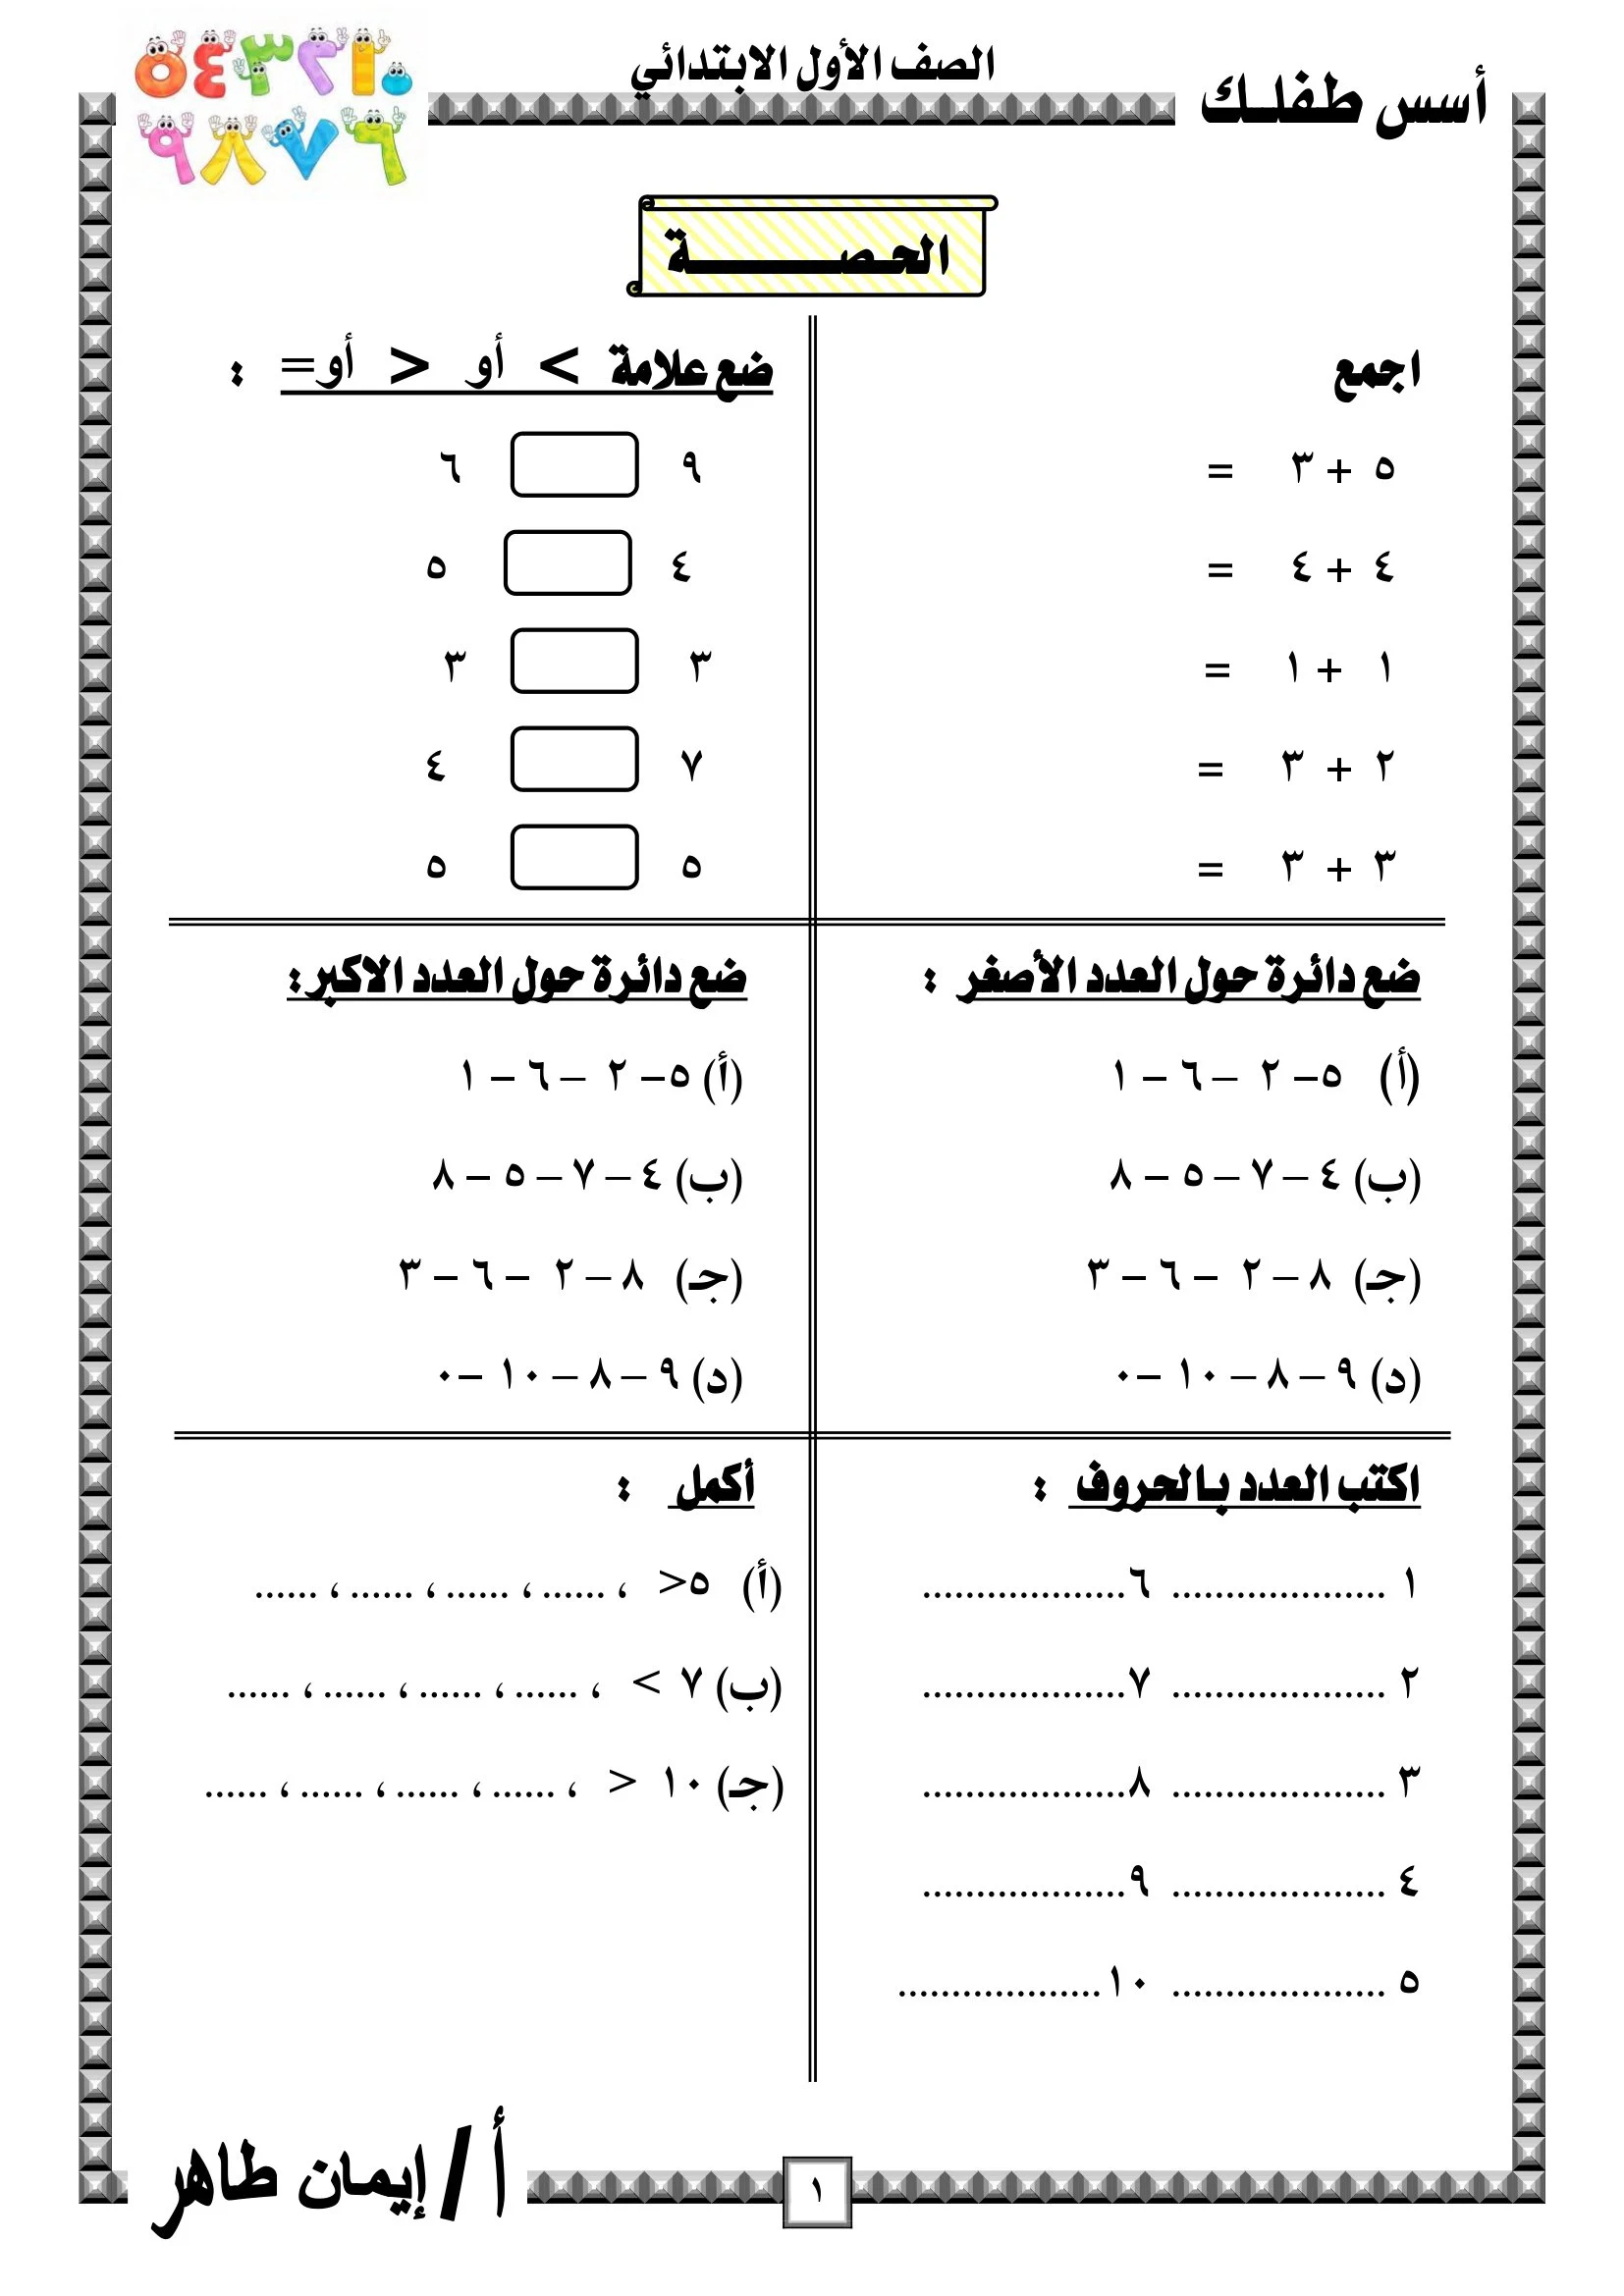 مذكرة تمارين على الرياضيات للترم الأول لأولى ابتدائي pdf تحميل مباشر مجاني